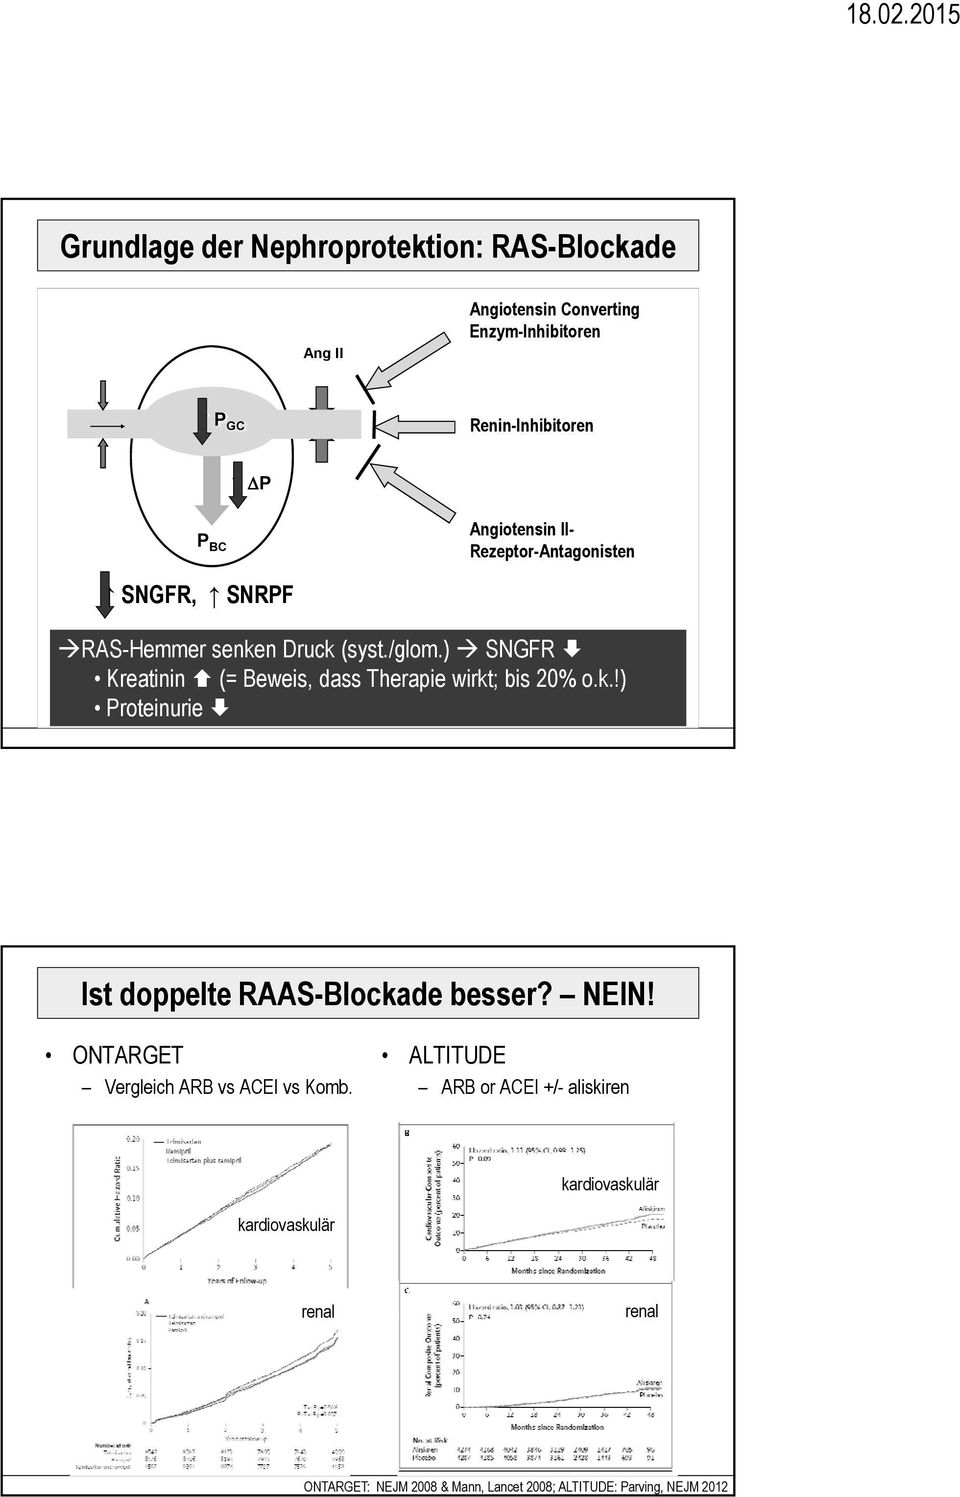 ) SNGFR Kreatinin (= Beweis, dass Therapie wirkt; bis 20% o.k.!) Proteinurie Ist doppelte RAAS-Blockade besser? NEIN!